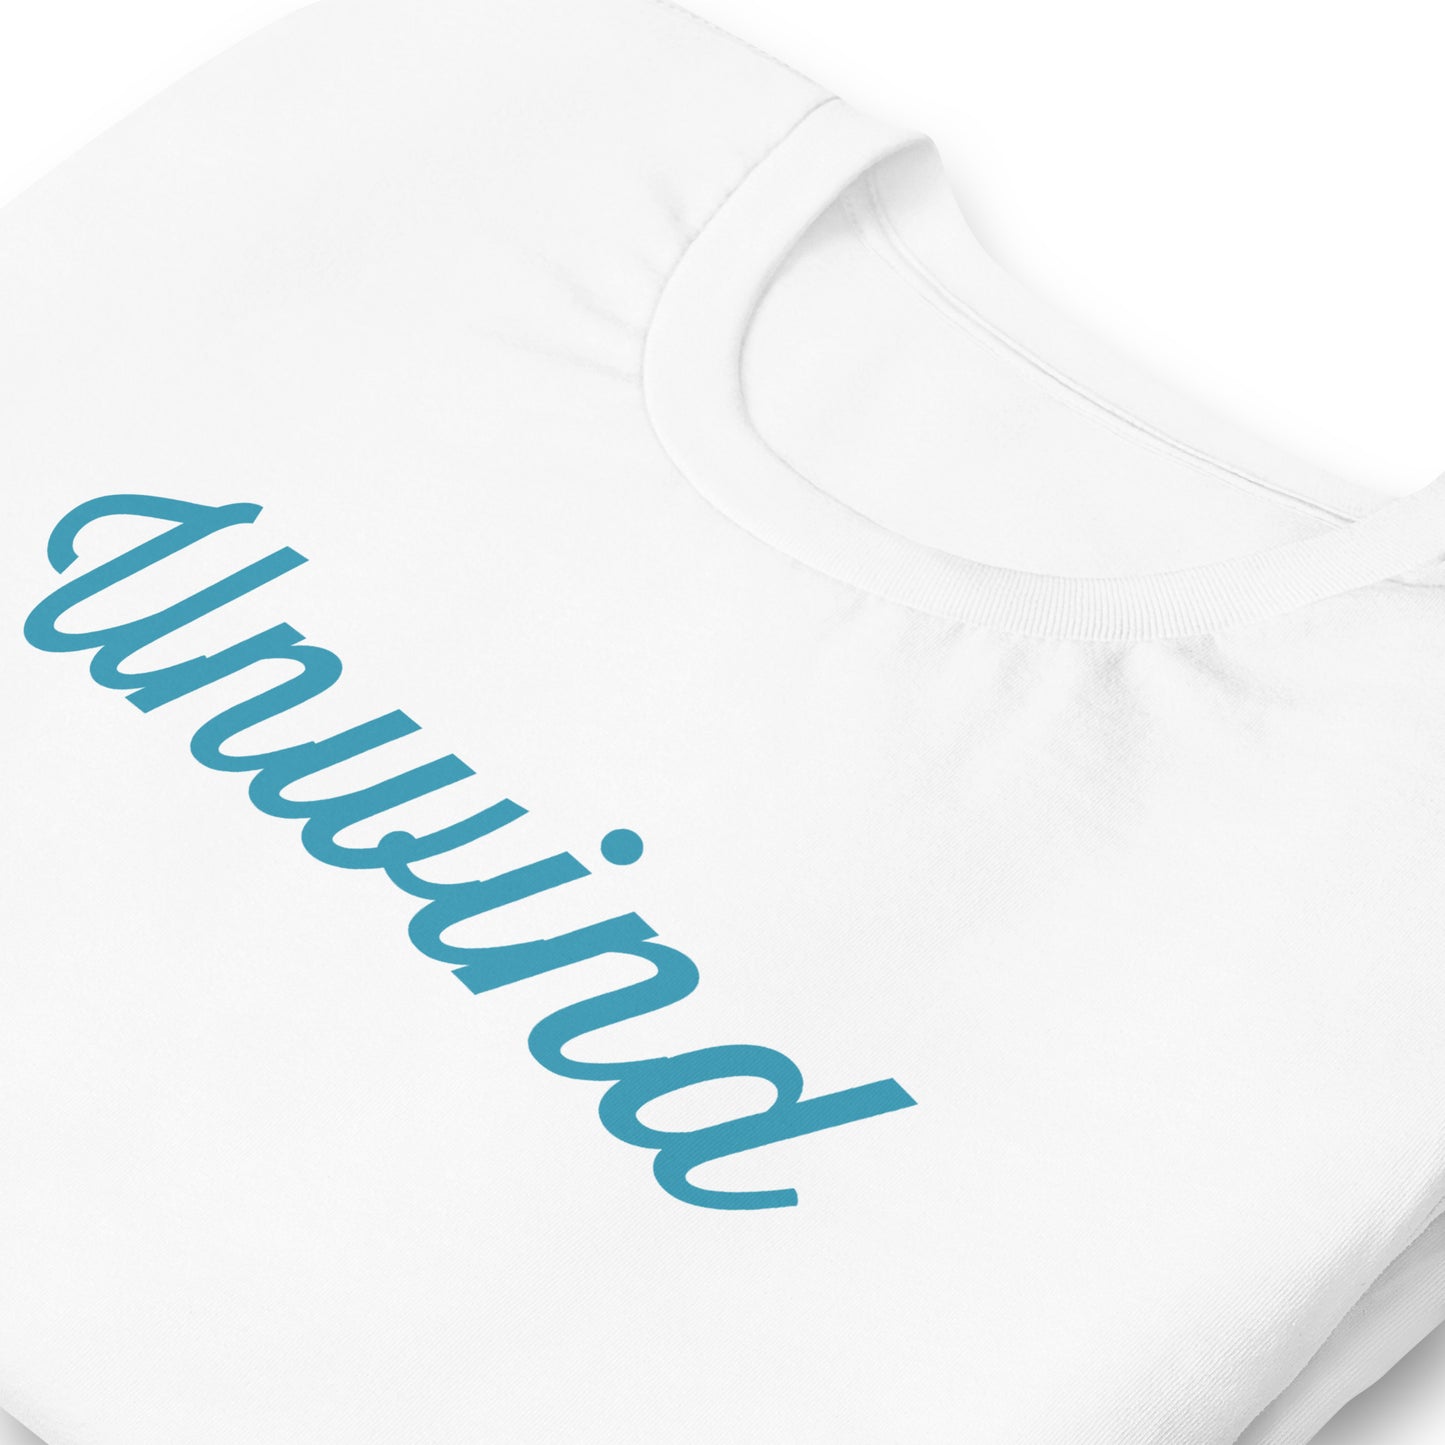 Unwind Unisex Launch T-shirt